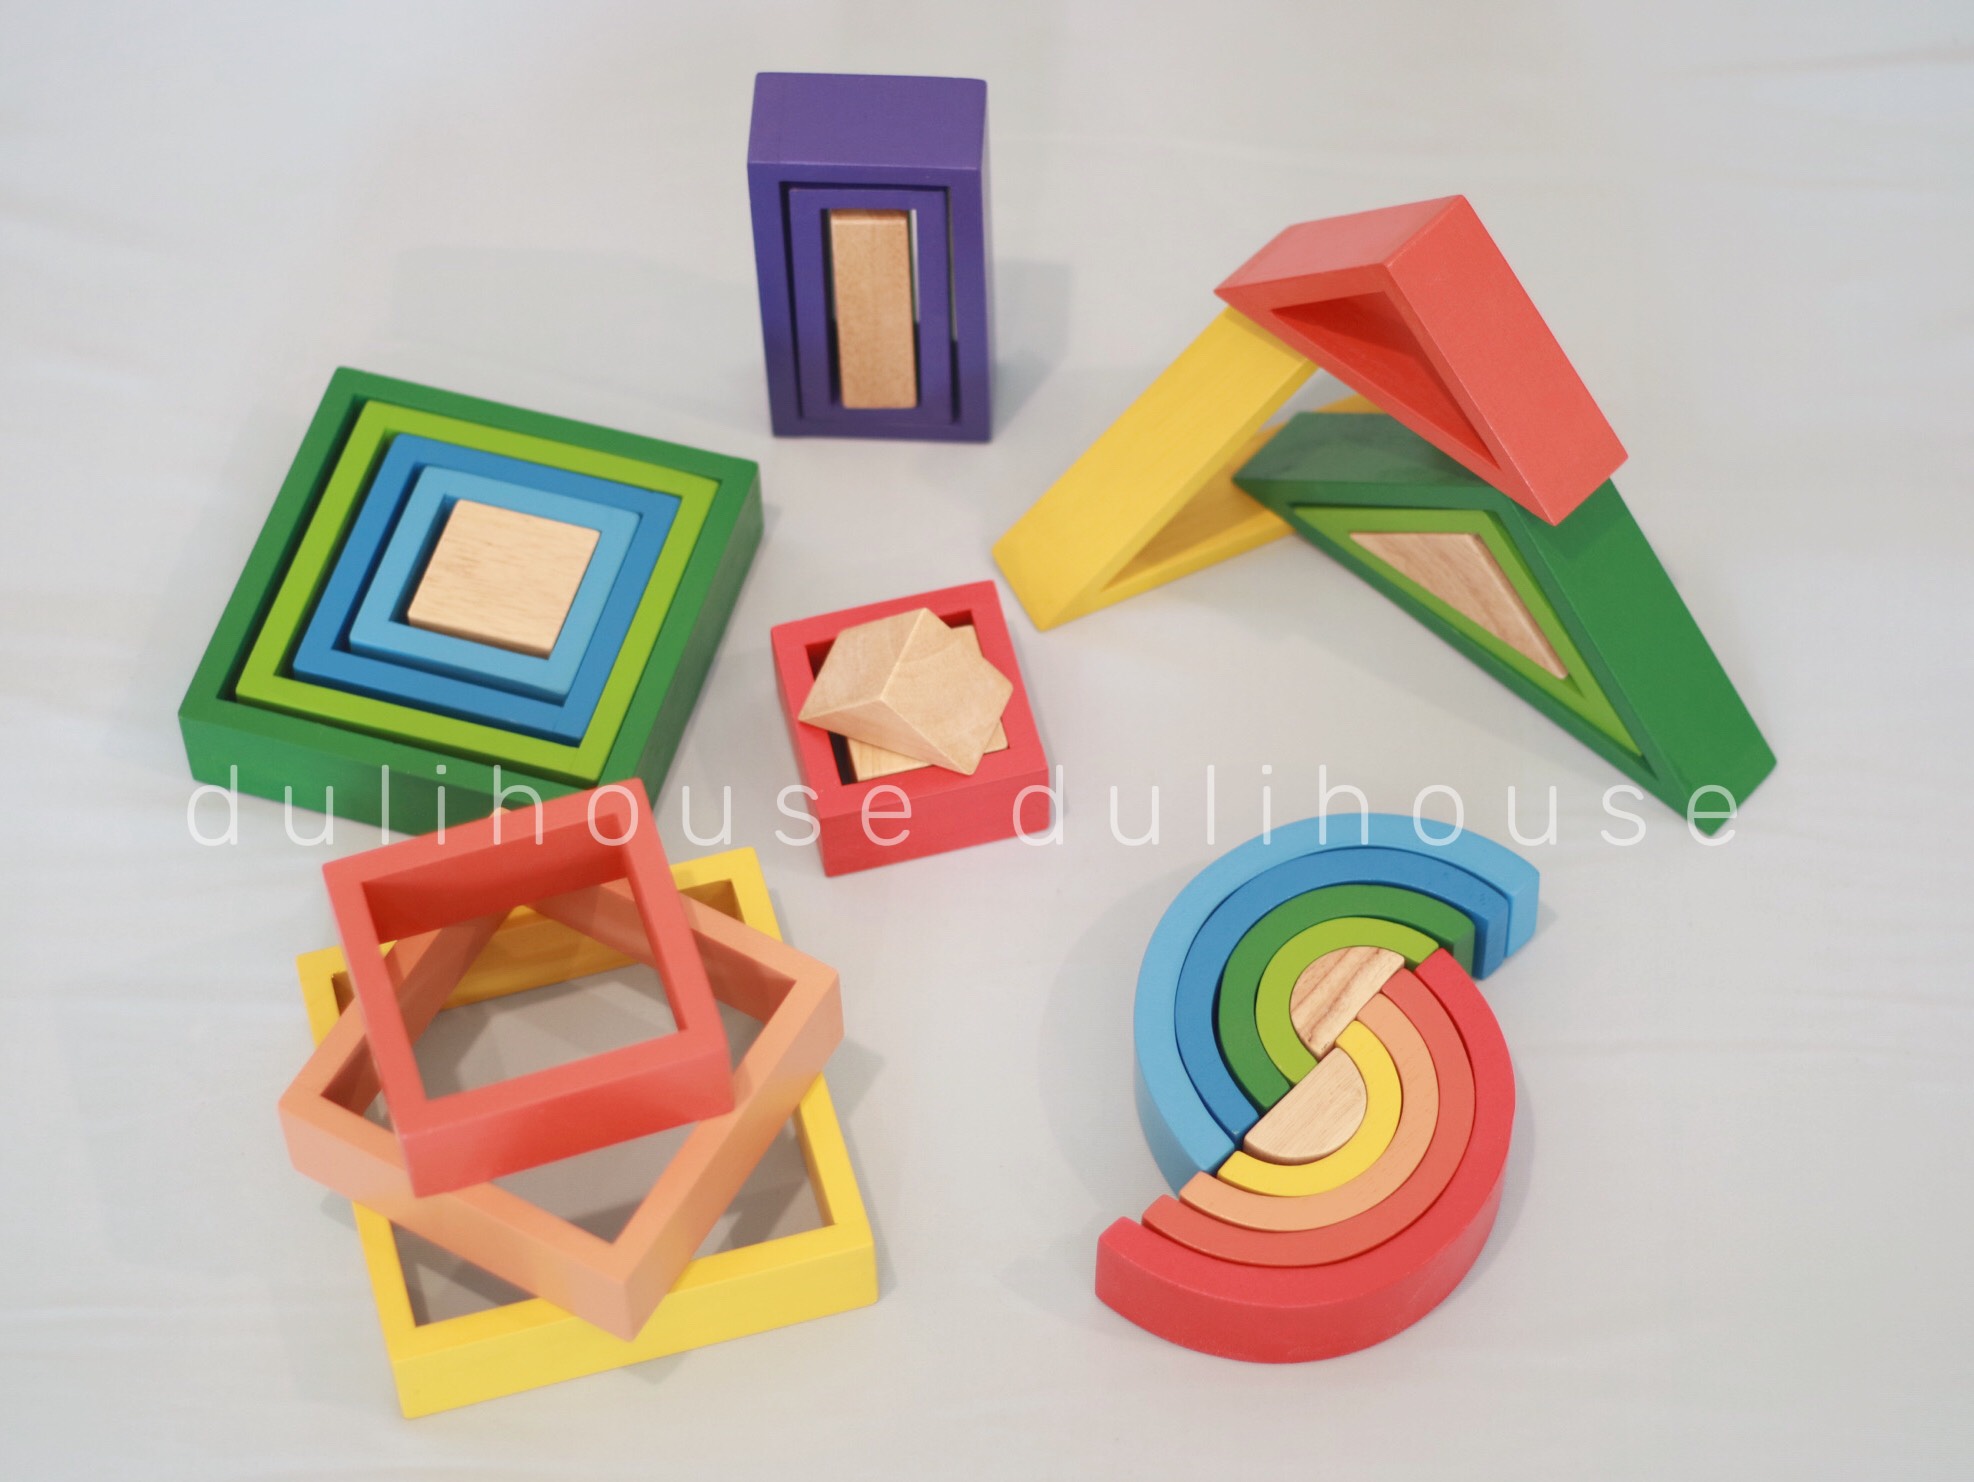 Đồ chơi gỗ bộ xếp hình cầu vồng giúp bé nhận biết các loại màu sắc cầu vồng, làm quen so sánh lớn nhỏ, phát triển tư duy - Sản xuất tại Việt Nam